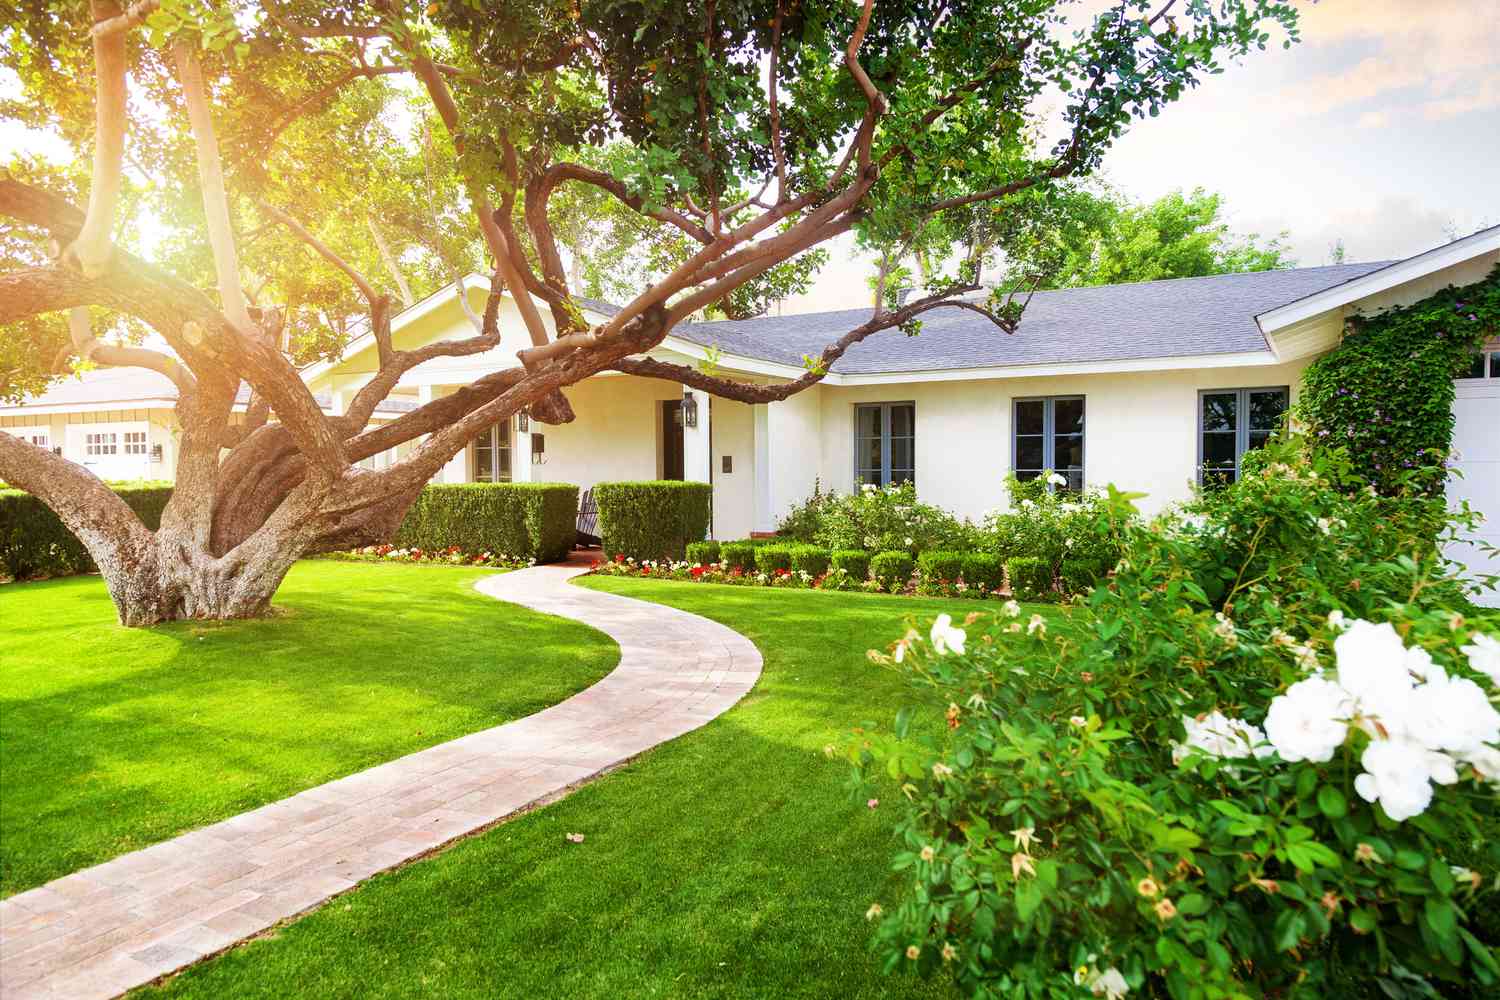 Uma casa branca estilo rancho com grama verde, uma grande árvore baixa e arbustos floridos.